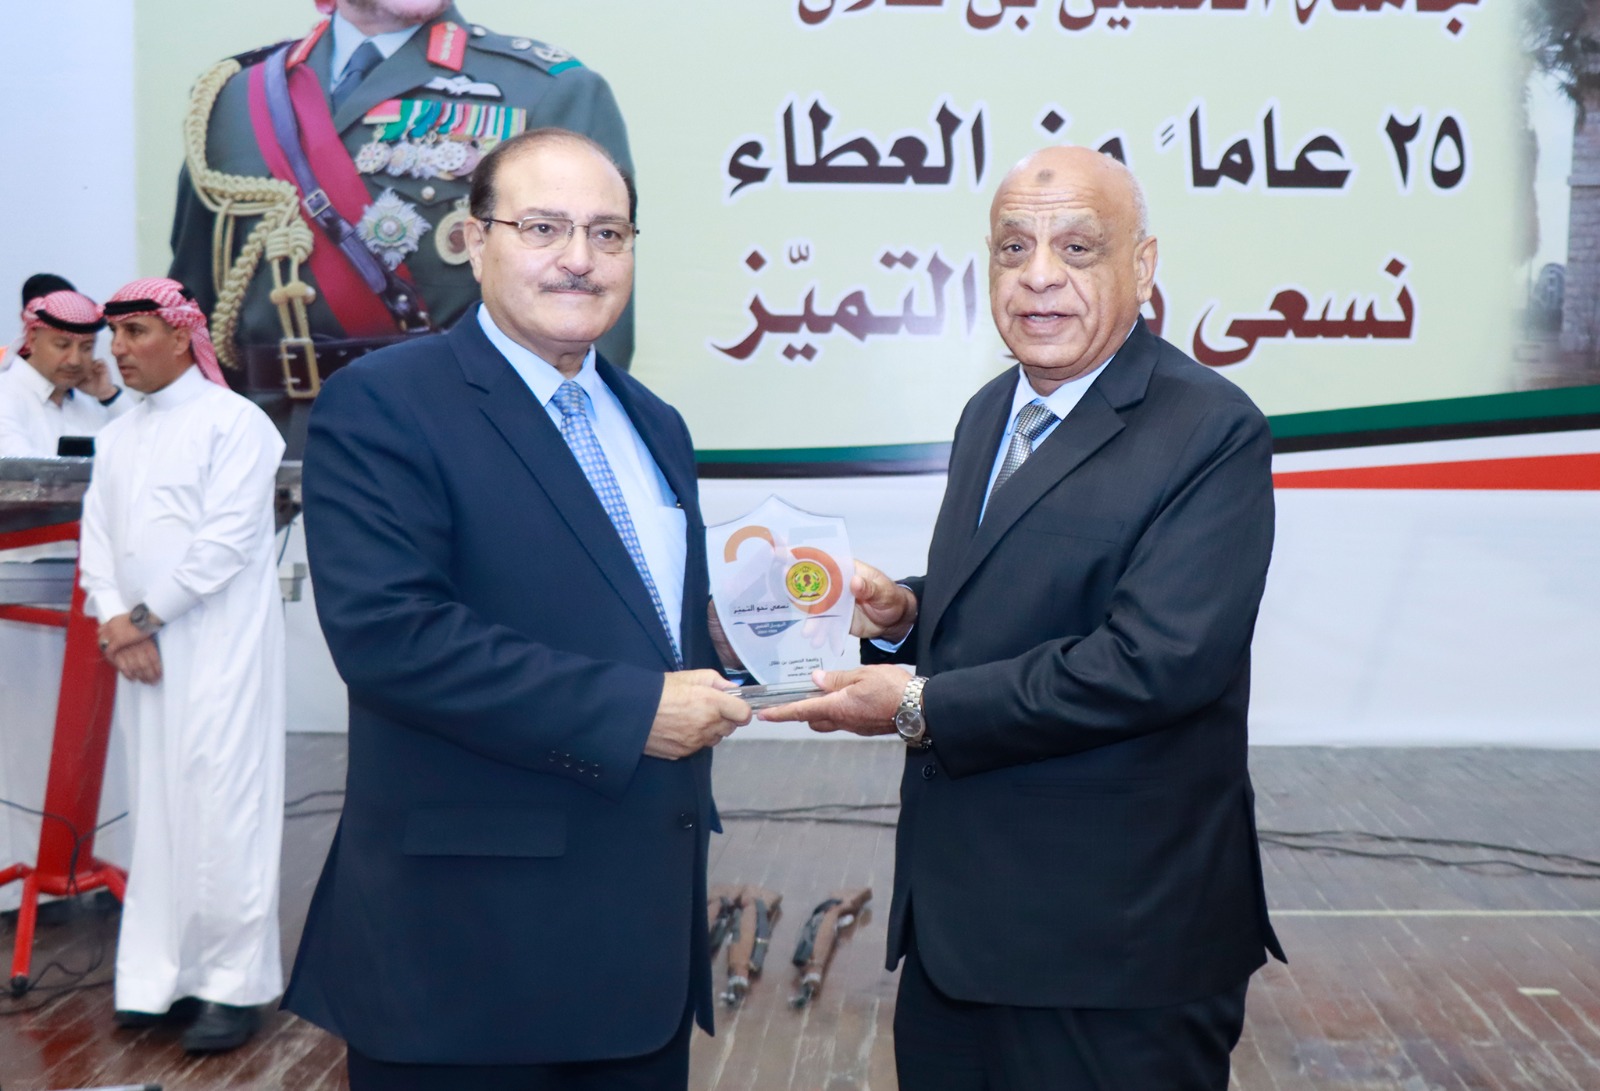 جامعة الحسين بن طلال تحتفل بيوبيلها الفضي لتأسيسها